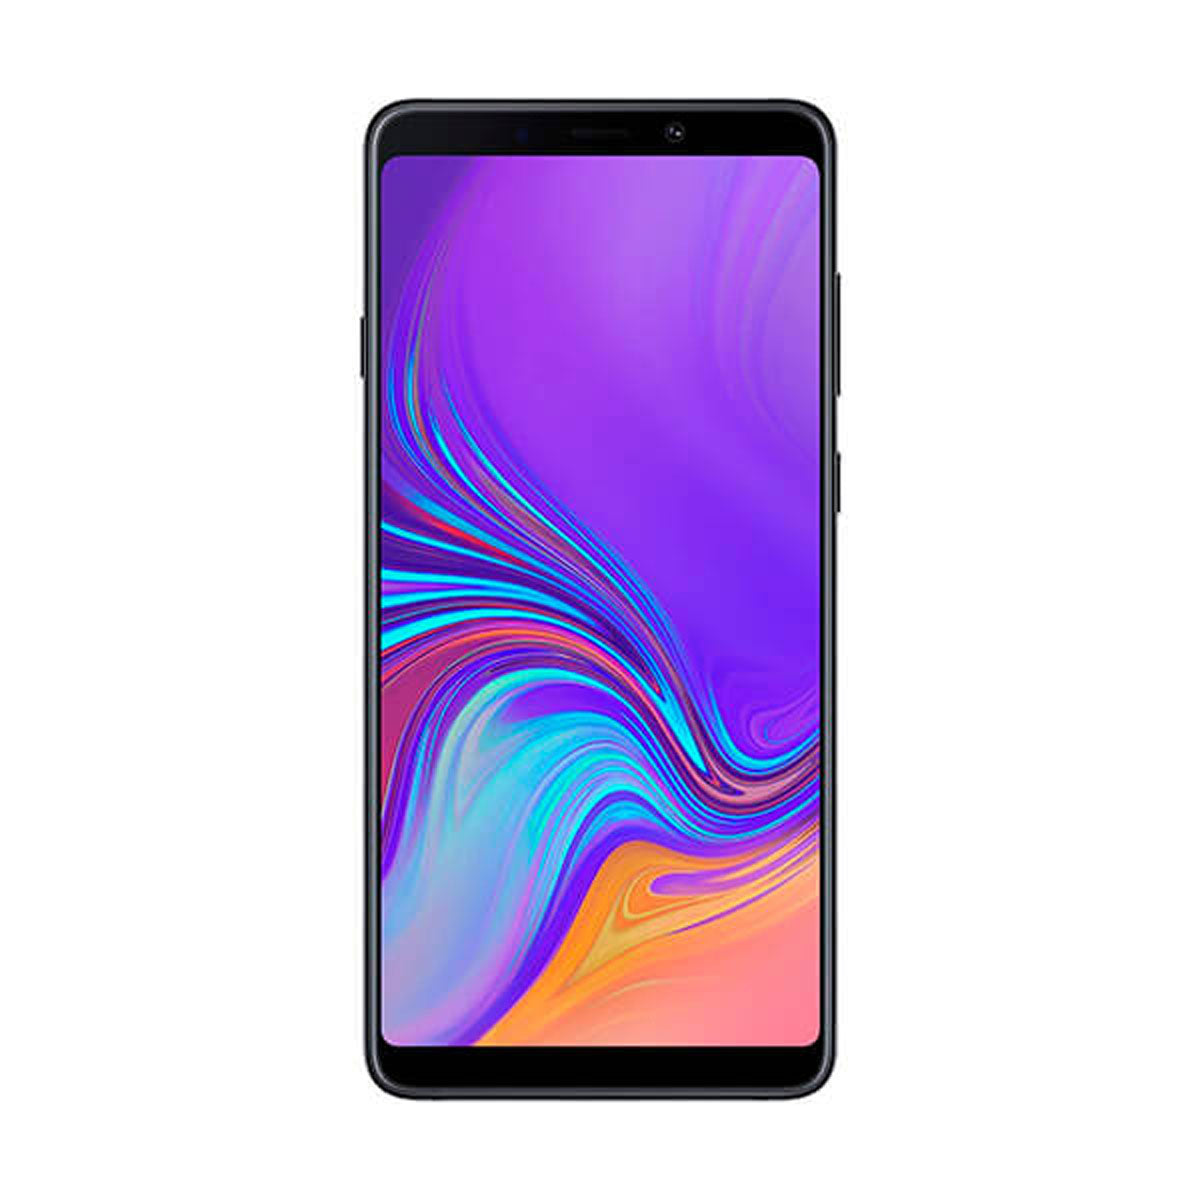 Samsung Galaxy A9 (2018) 6GB/128GB Black Single SIM A920